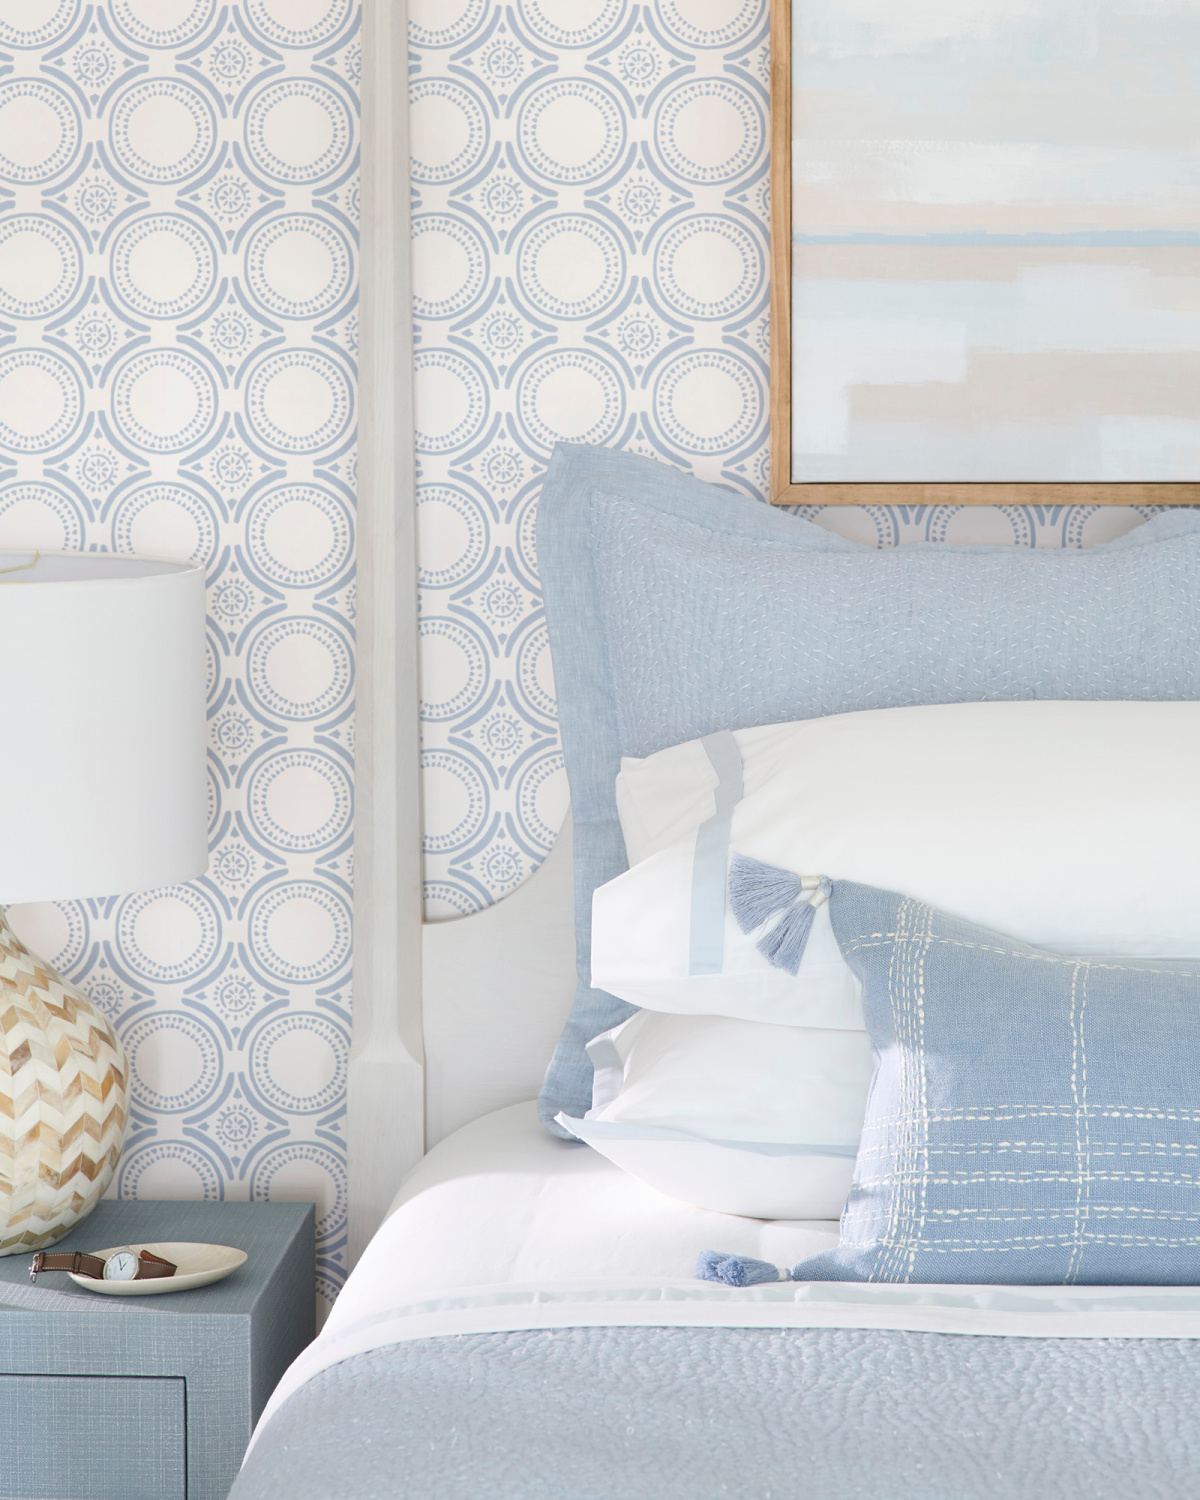 Chambre côtière bleue et blanche avec papier peint classique (Pesaro) avec une teinte chambray - Serena & Lily. #coastalbedroom #chambres bleues